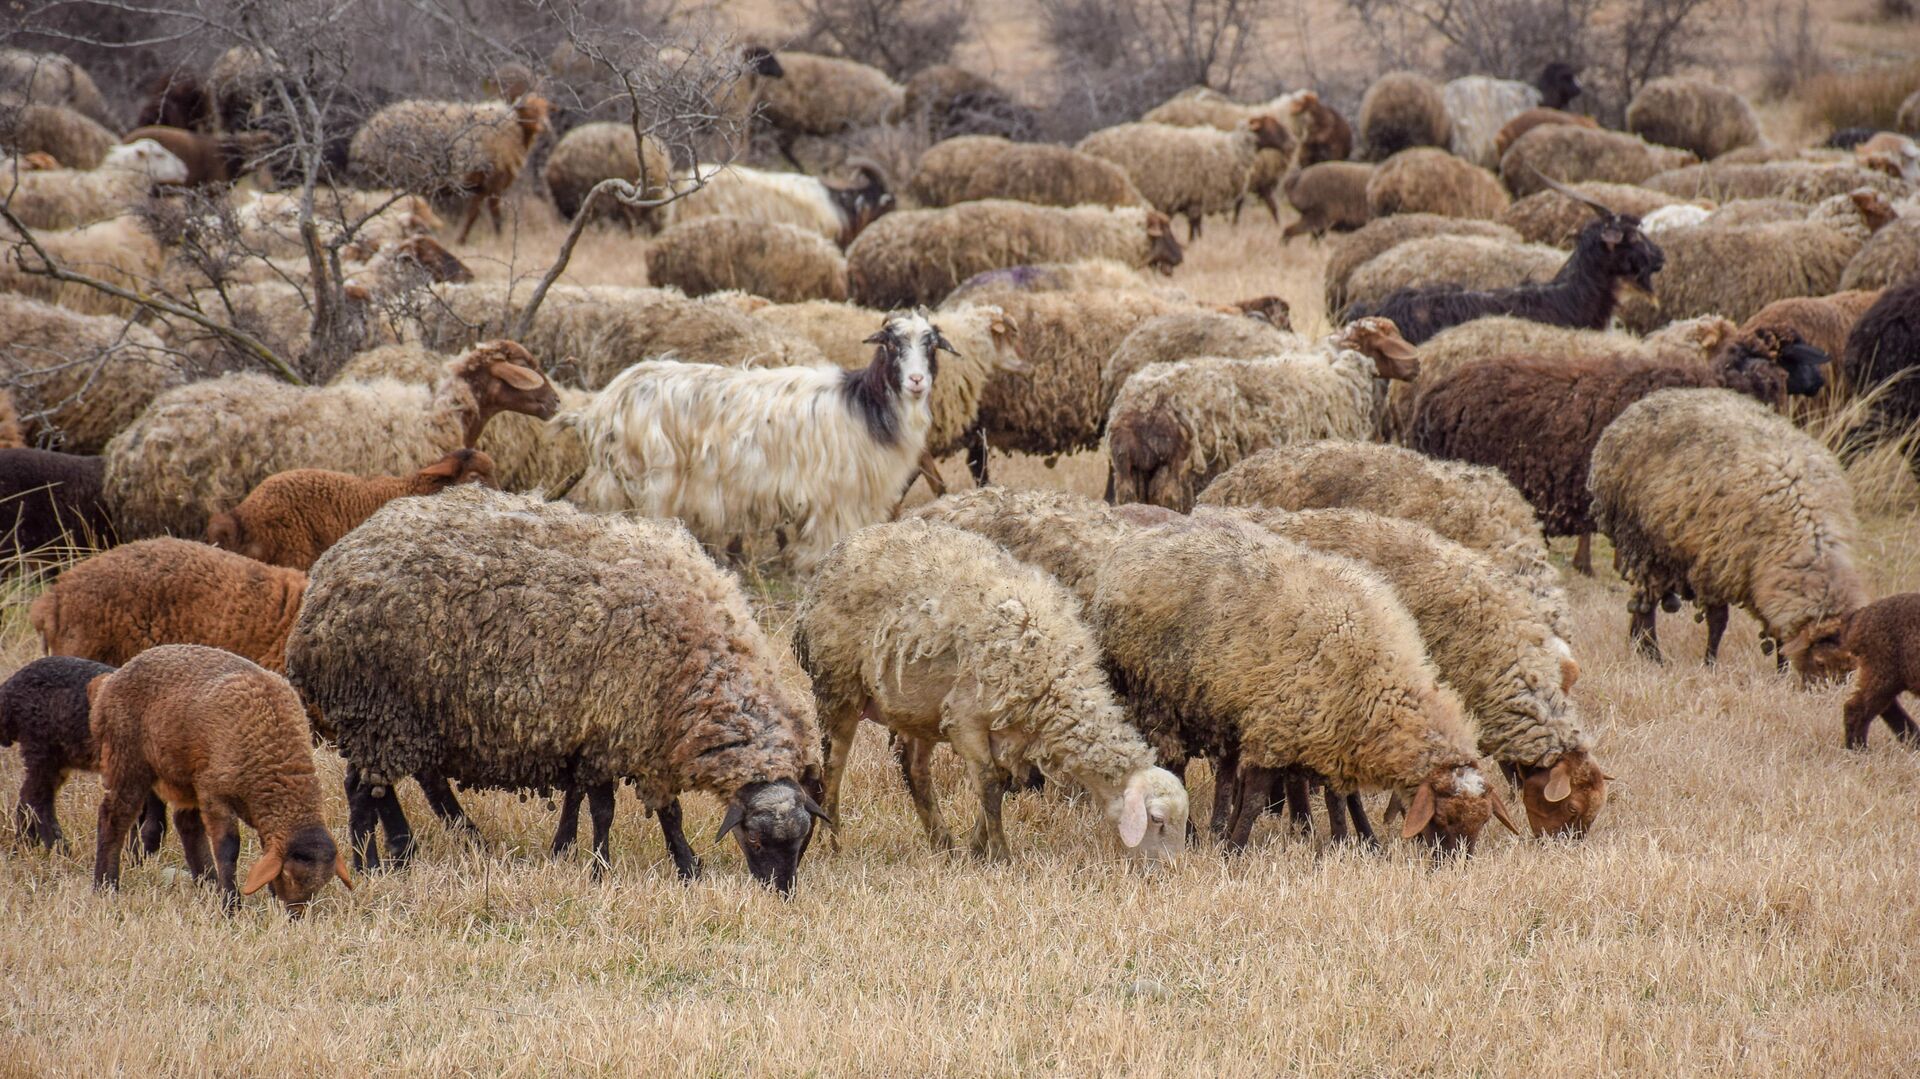 Ceyrançöl düzündə yaşayan çobanlar - Sputnik Azərbaycan, 1920, 10.09.2021